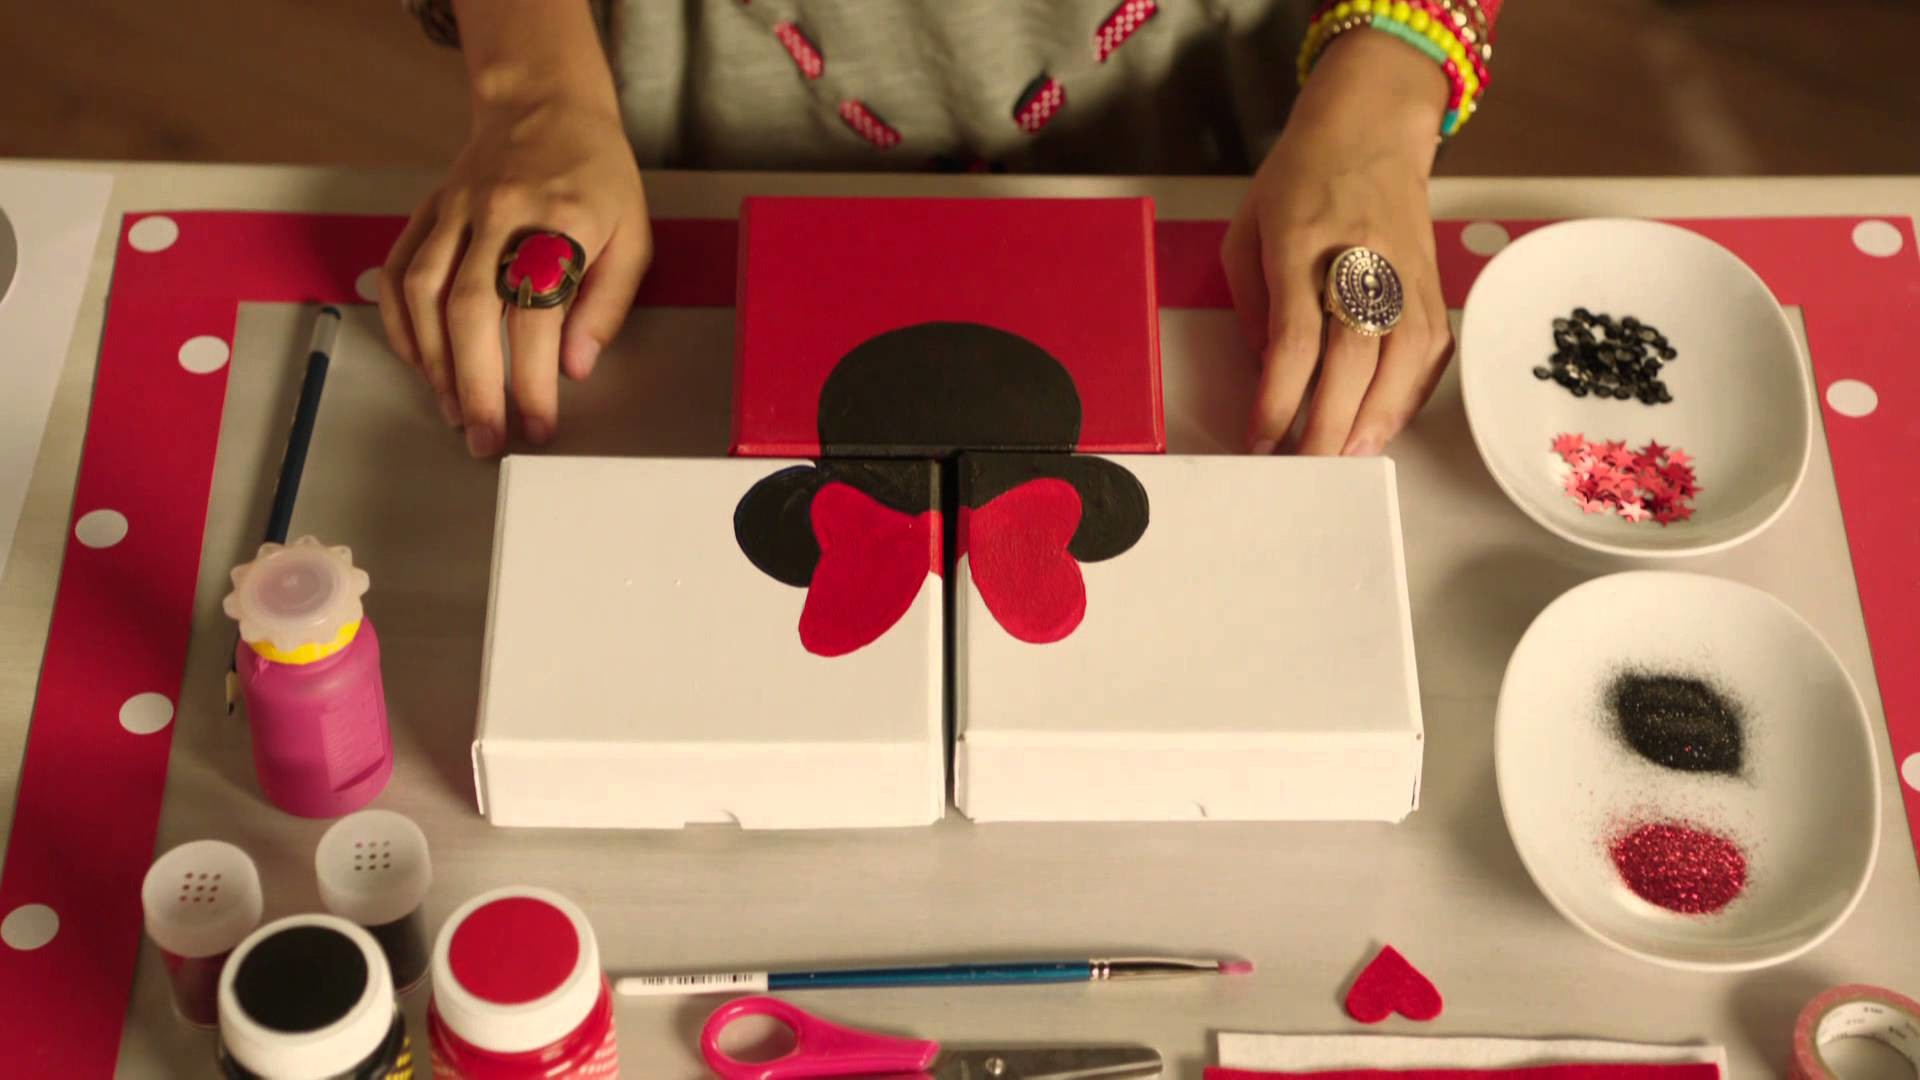 Disney Channel España | Minnie&You (T1) "Cajas Minnie"